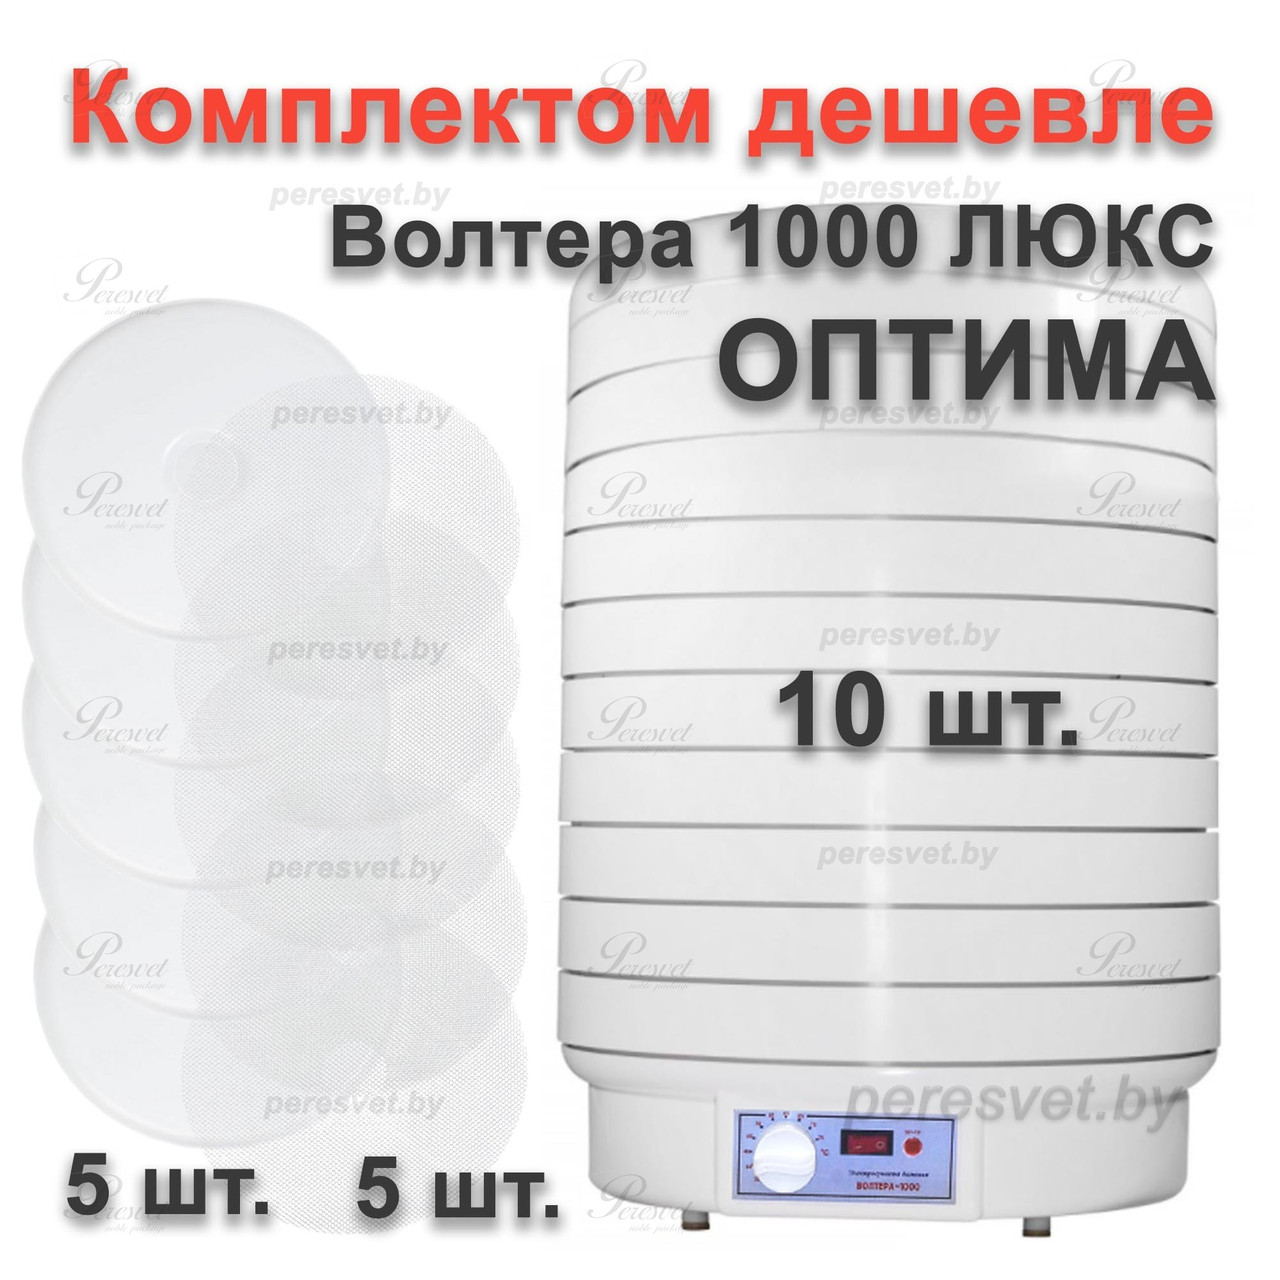 Комплект ОПТИМА Электросушилка ВОЛТЕРА 1000 ЛЮКС